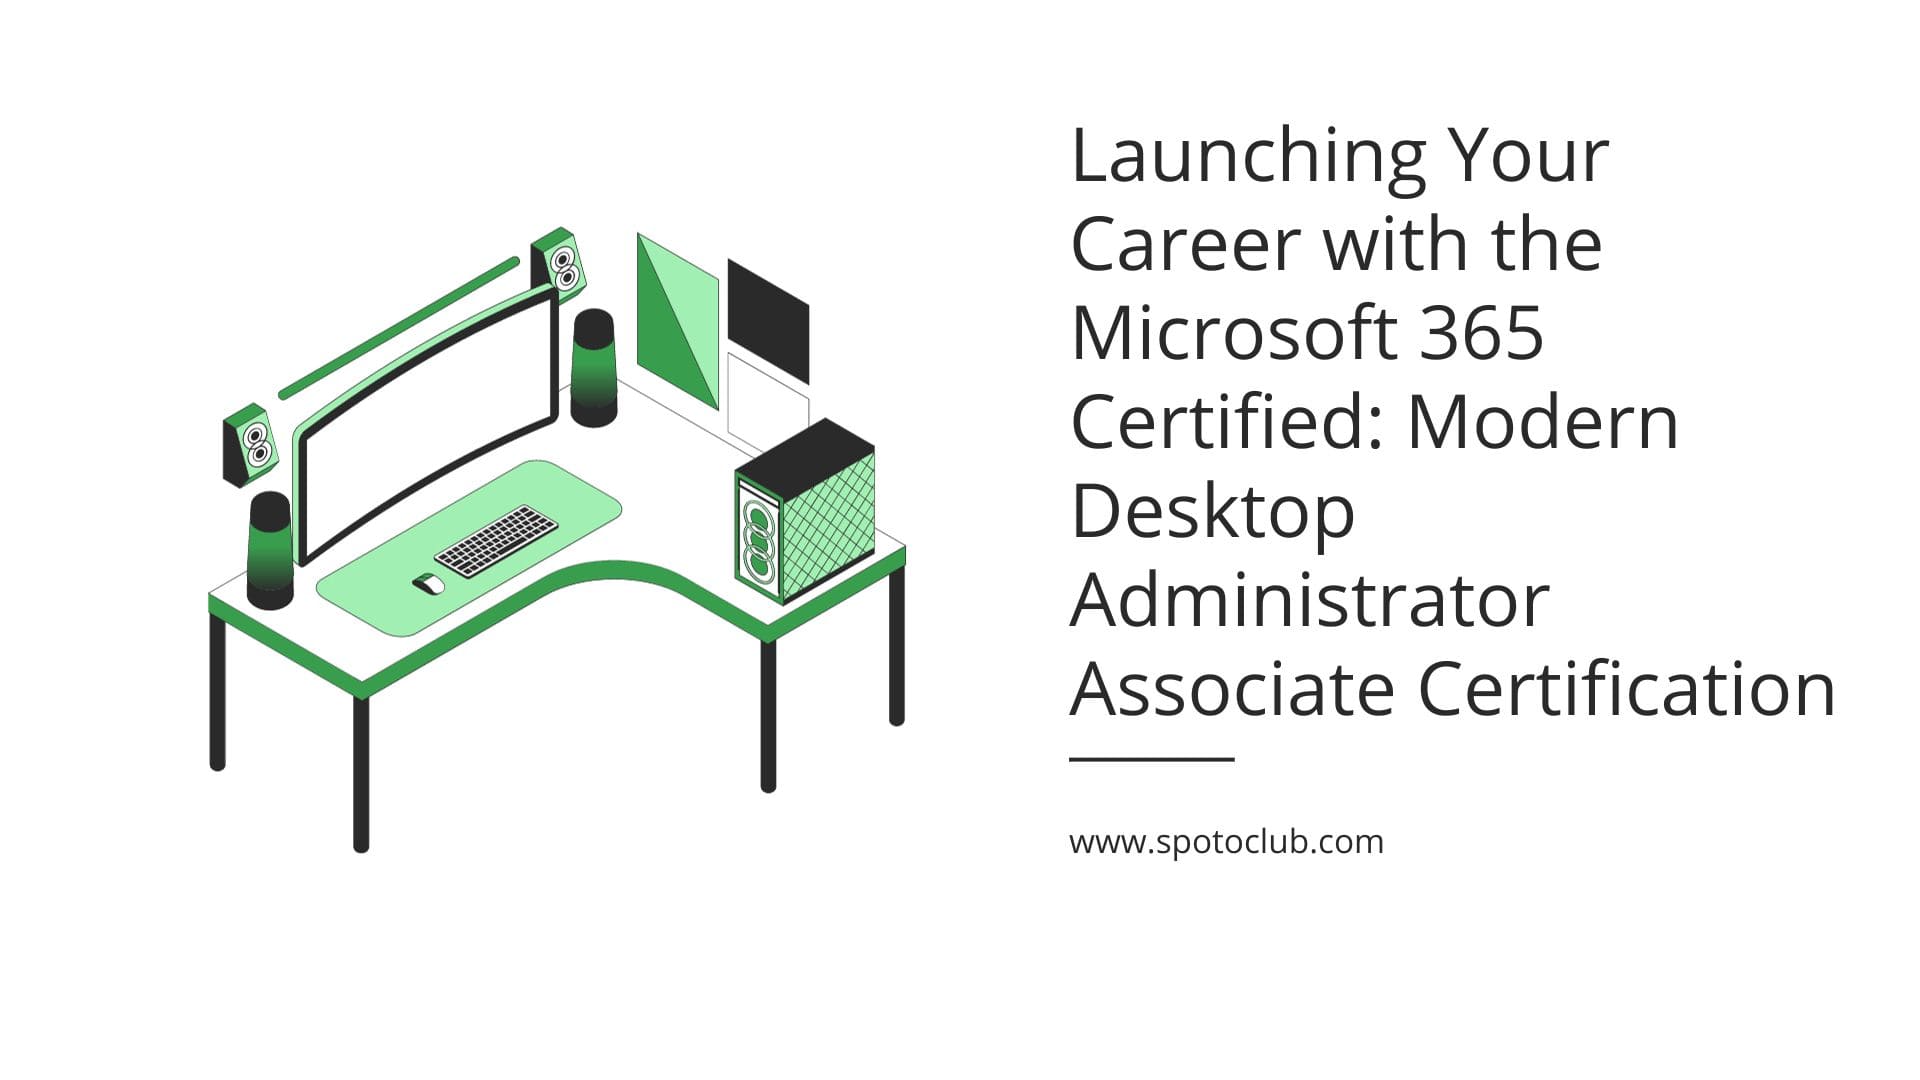 Modern Desktop Administrator Associate Certification